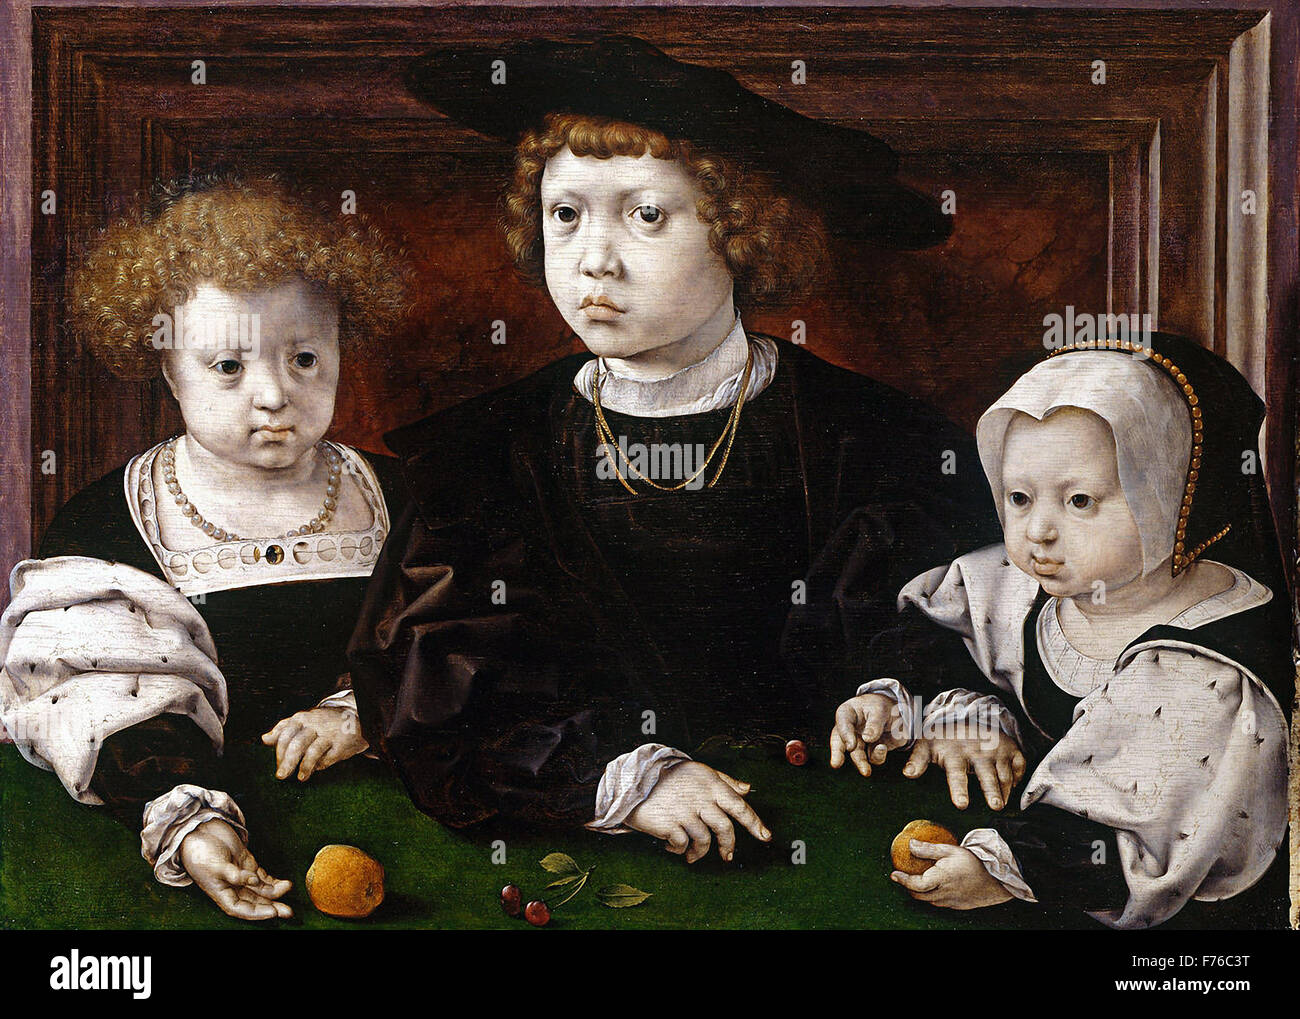 Jan Gossaert - Les enfants de Christian II, Roi de Danemark Banque D'Images